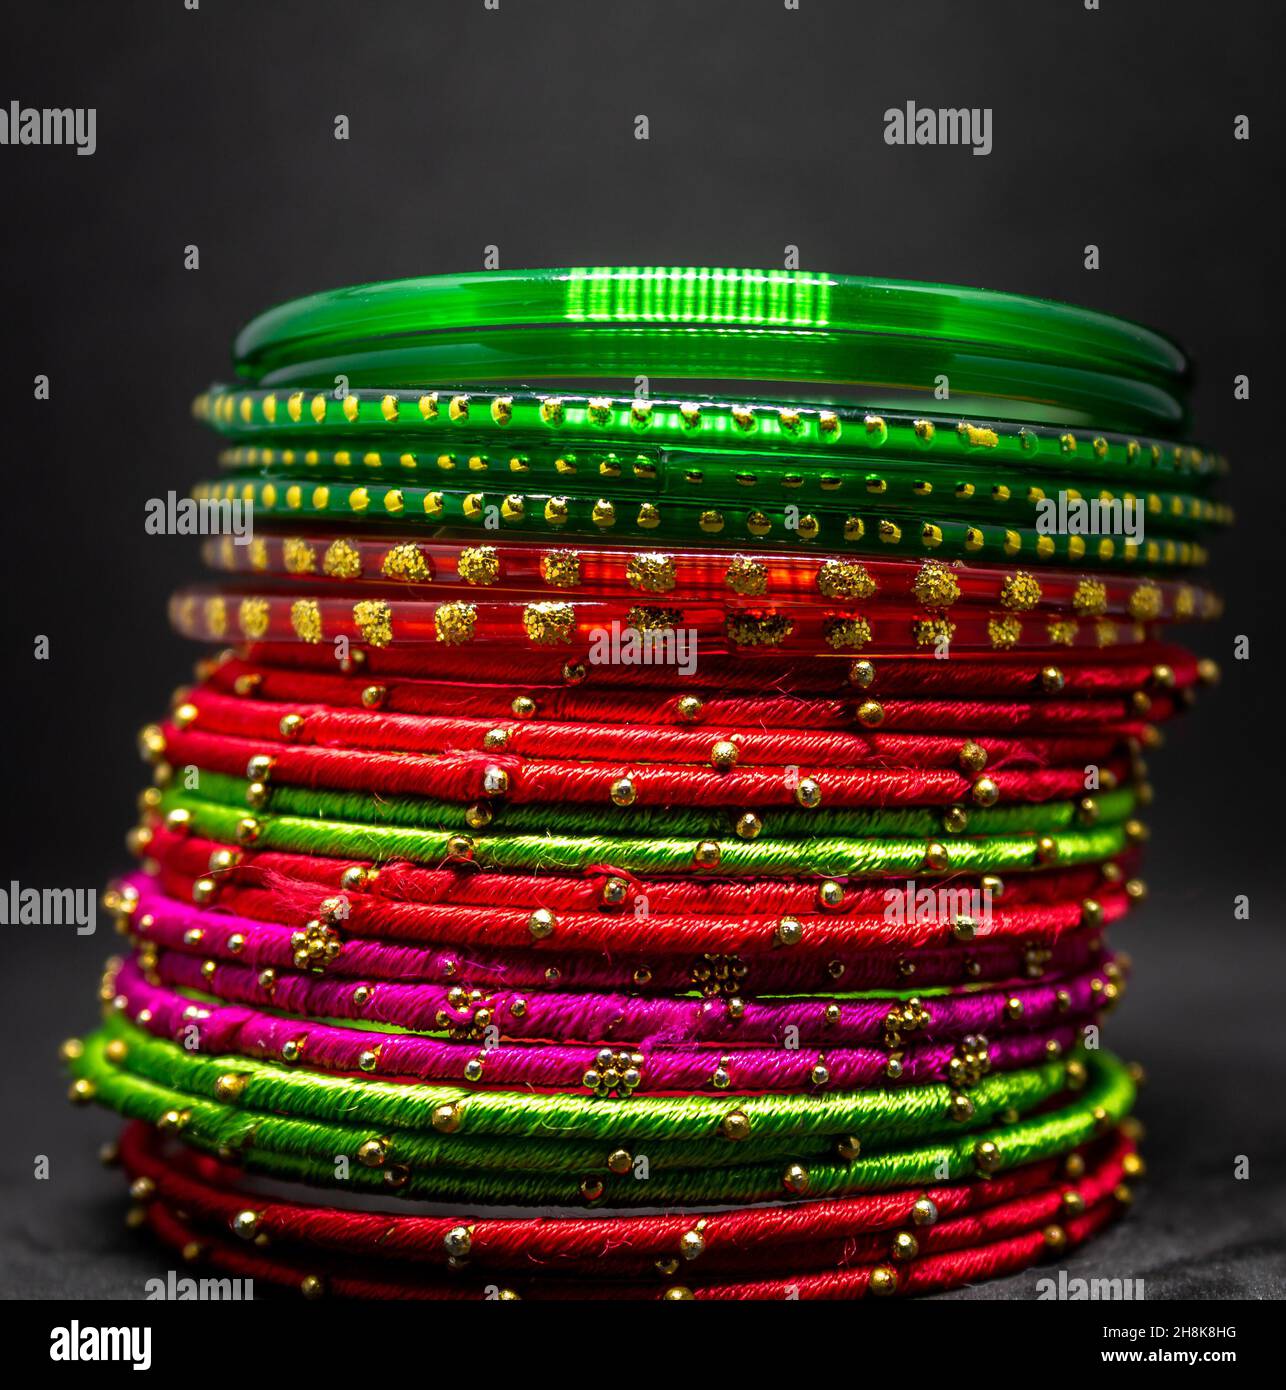 Gros plan de bracelets colorés (bracelets) avec des points dorés sur une surface grise Banque D'Images